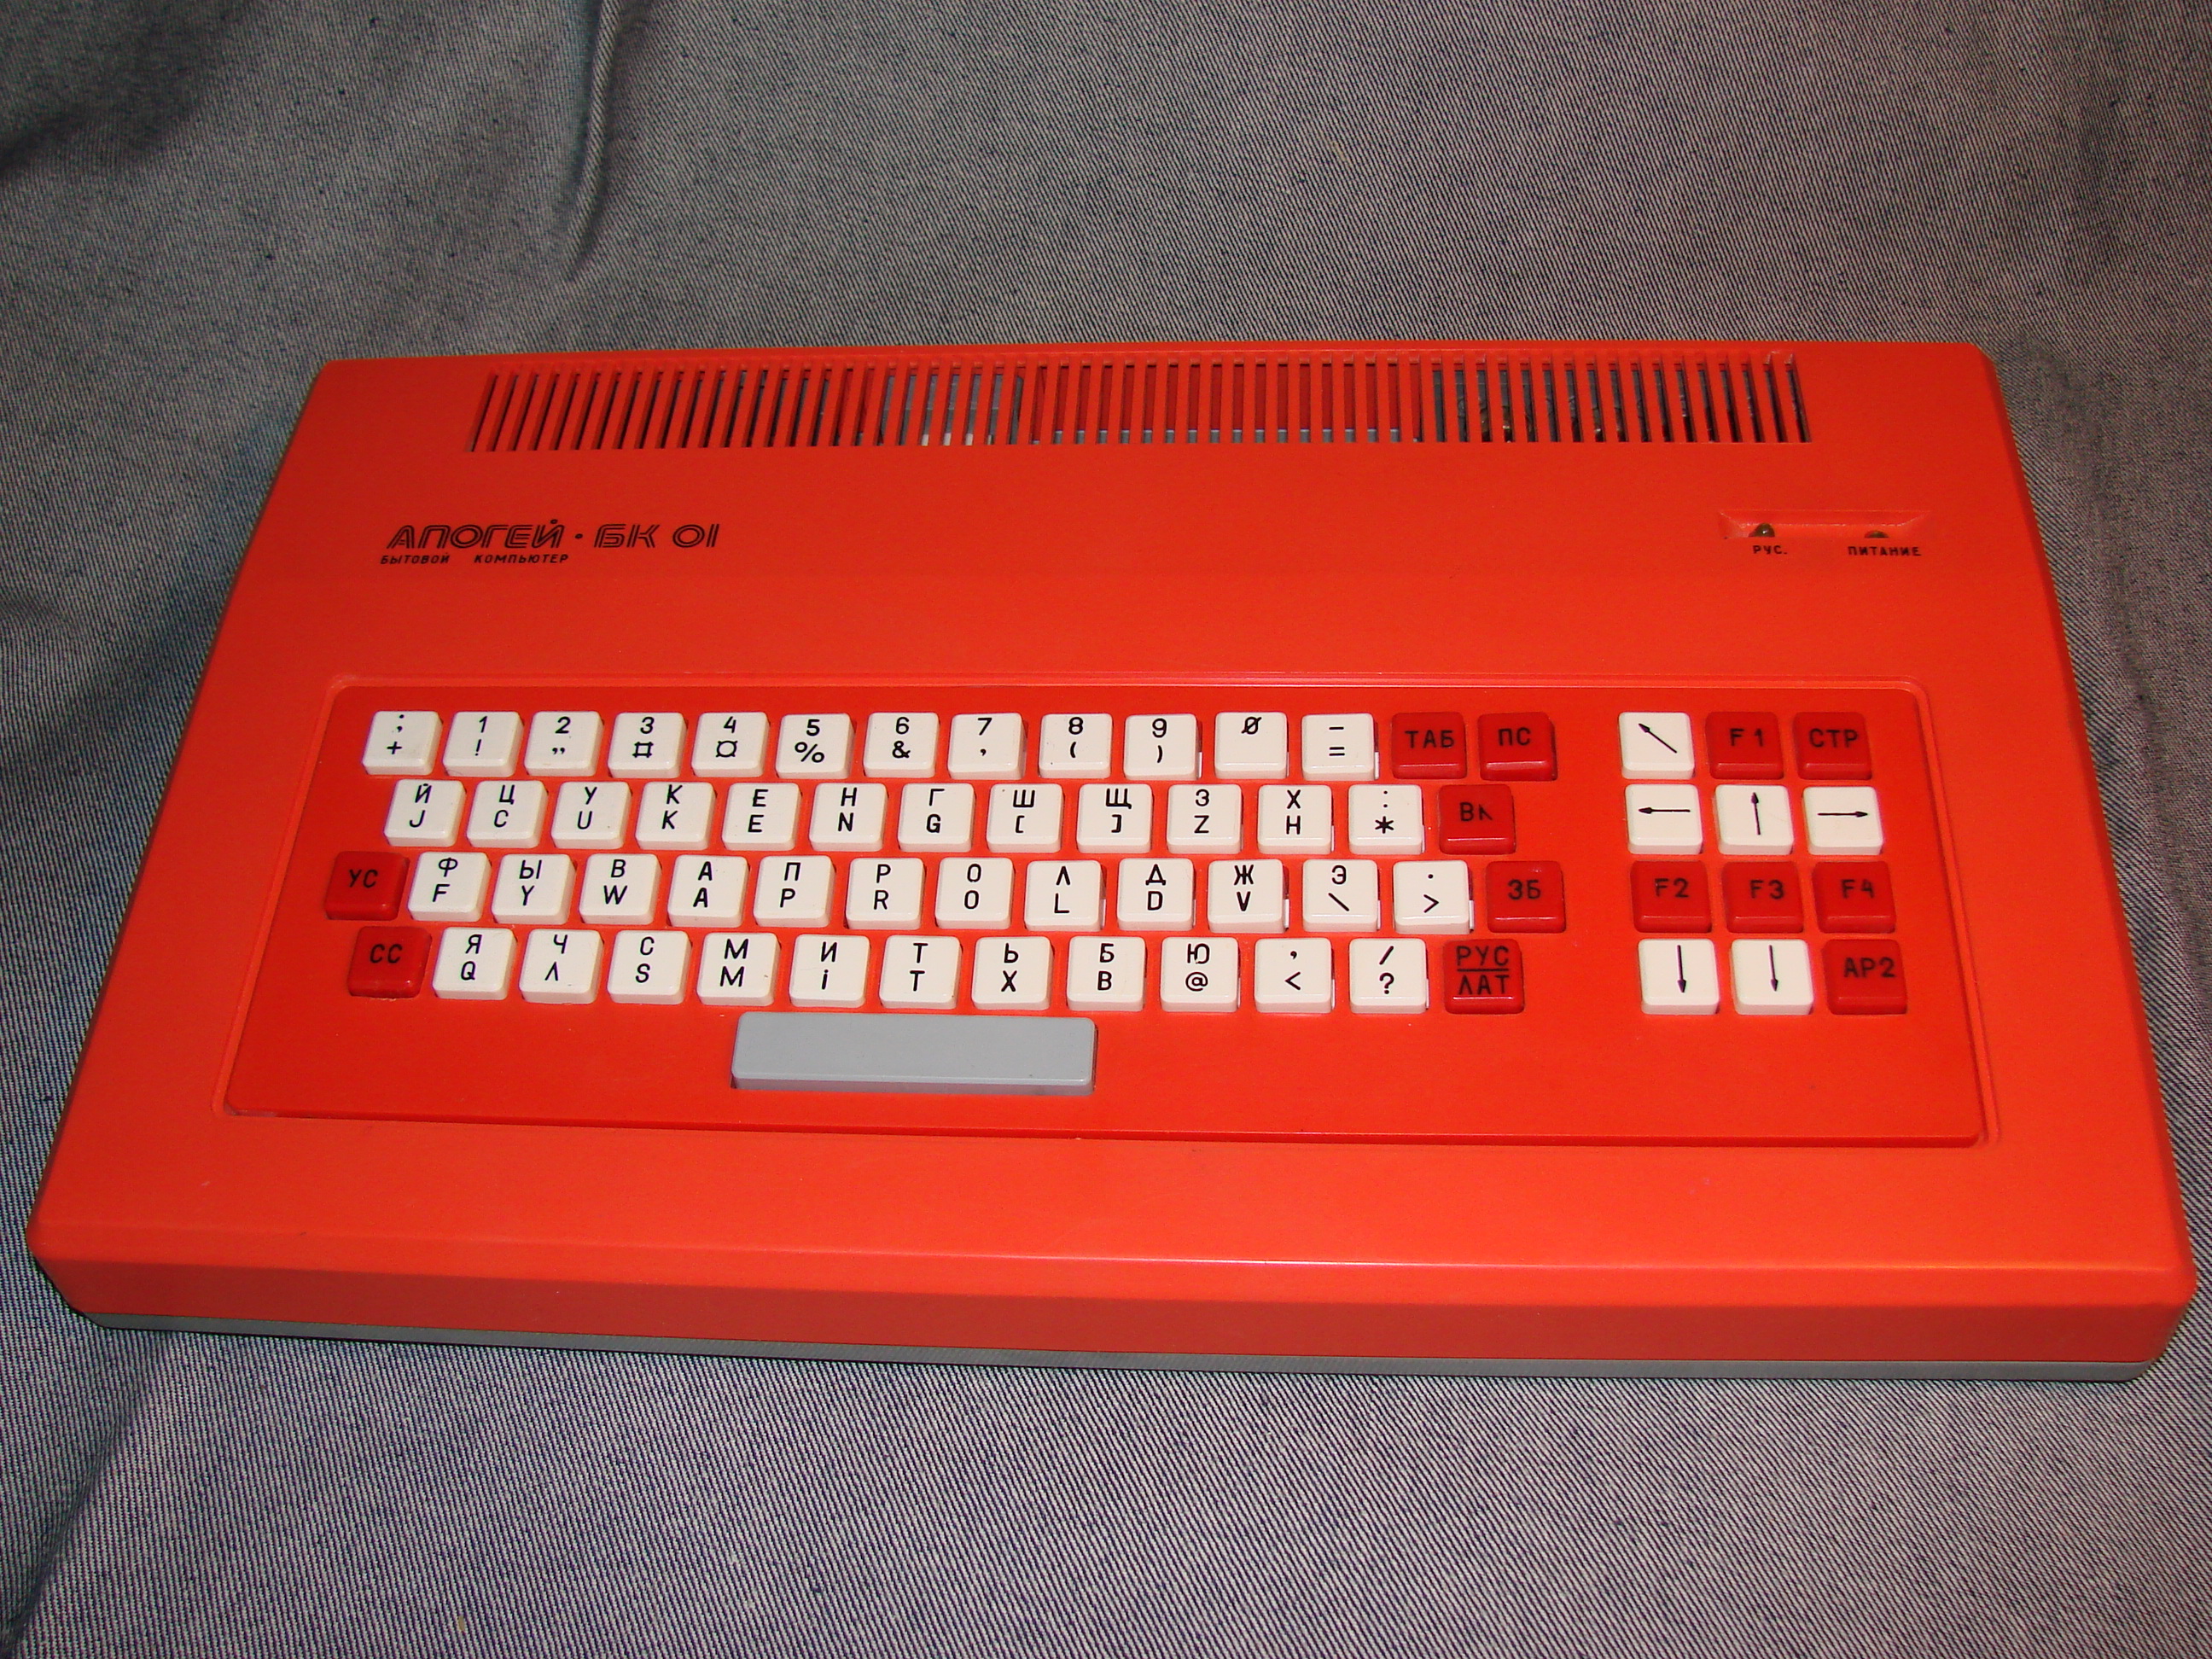 「アポゲイBK-01（Apogei BK-01）」は、ラジオ86RKをベースに開発されたコンピュータで、1988年に生産が始まった。データ保存にはコンパクト・カセットあるいはフロッピーディスクを使用。技術的にあまり特徴はないが、組み立て工程を最適化したことで、価格を440ルーブルと、著しく抑えることができた。